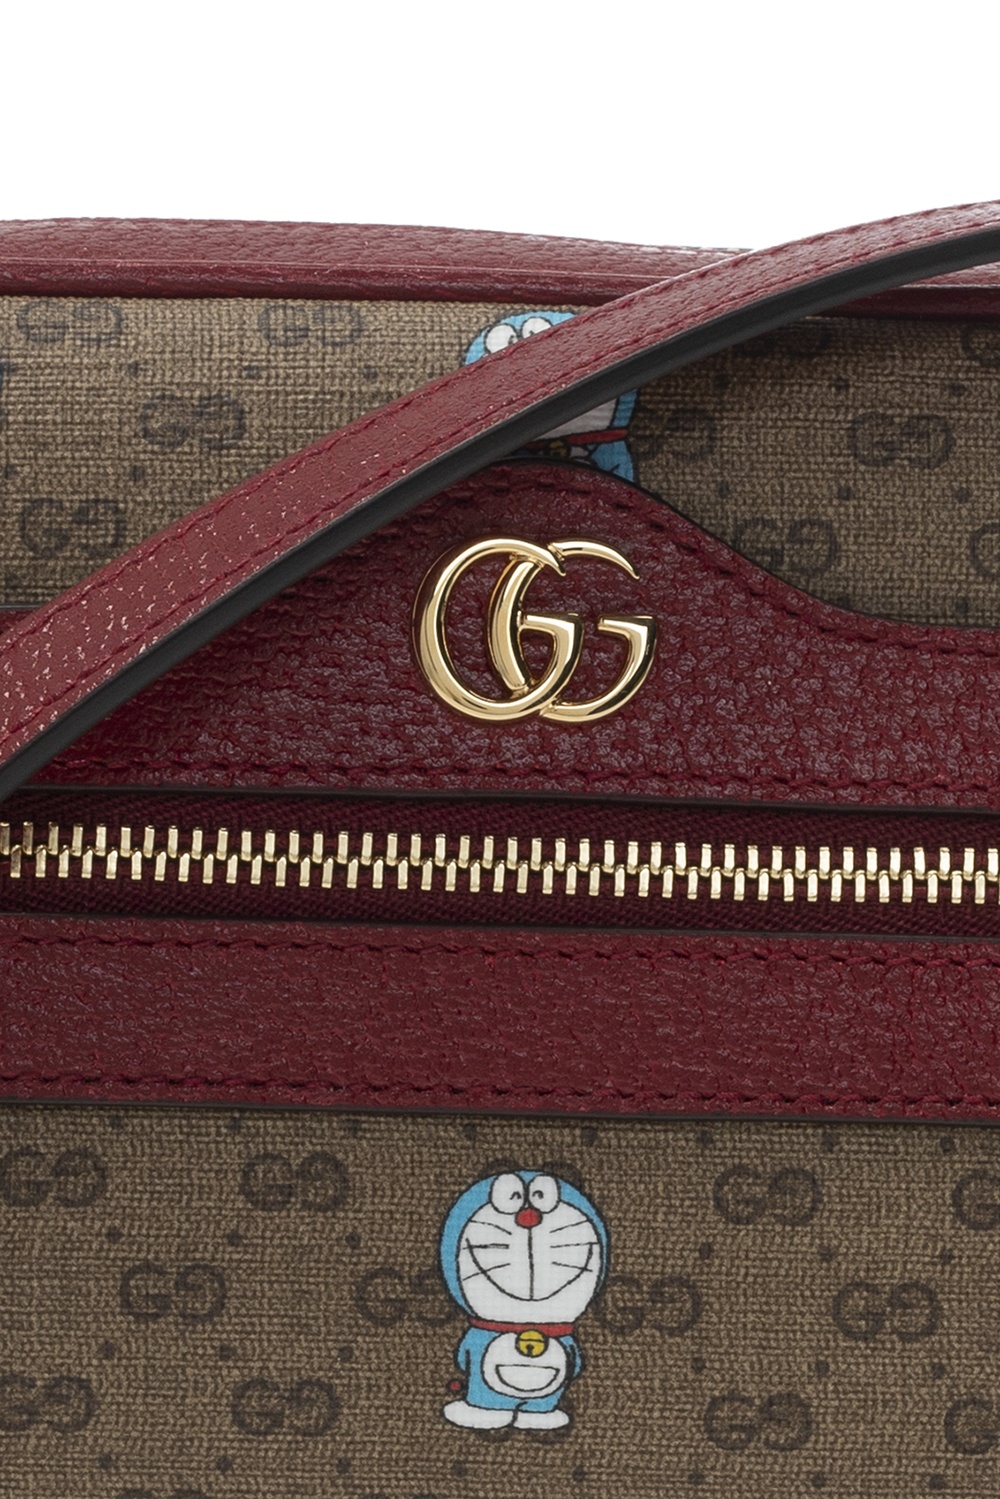 Obsessed with this Gucci bag find #tkmaxx #tkmaxxfinds #tkmaxxbag #tkm